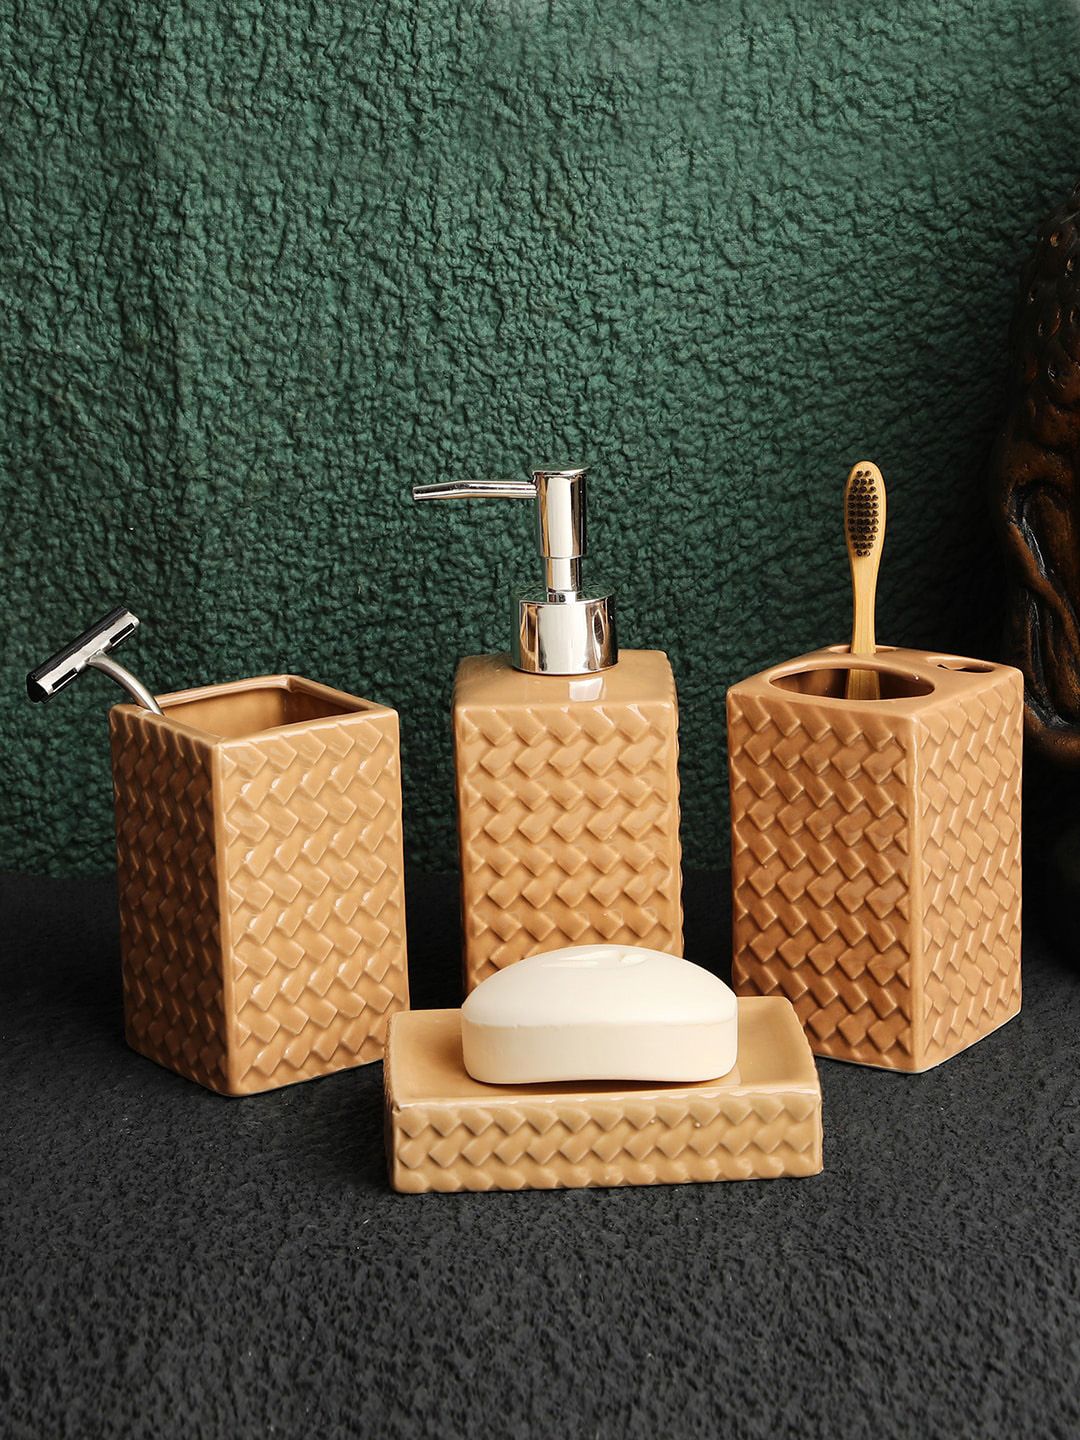 ROMEE 4 Pieces Tan Brown Textured Ceramic Bathroom Accessories Set Price in India